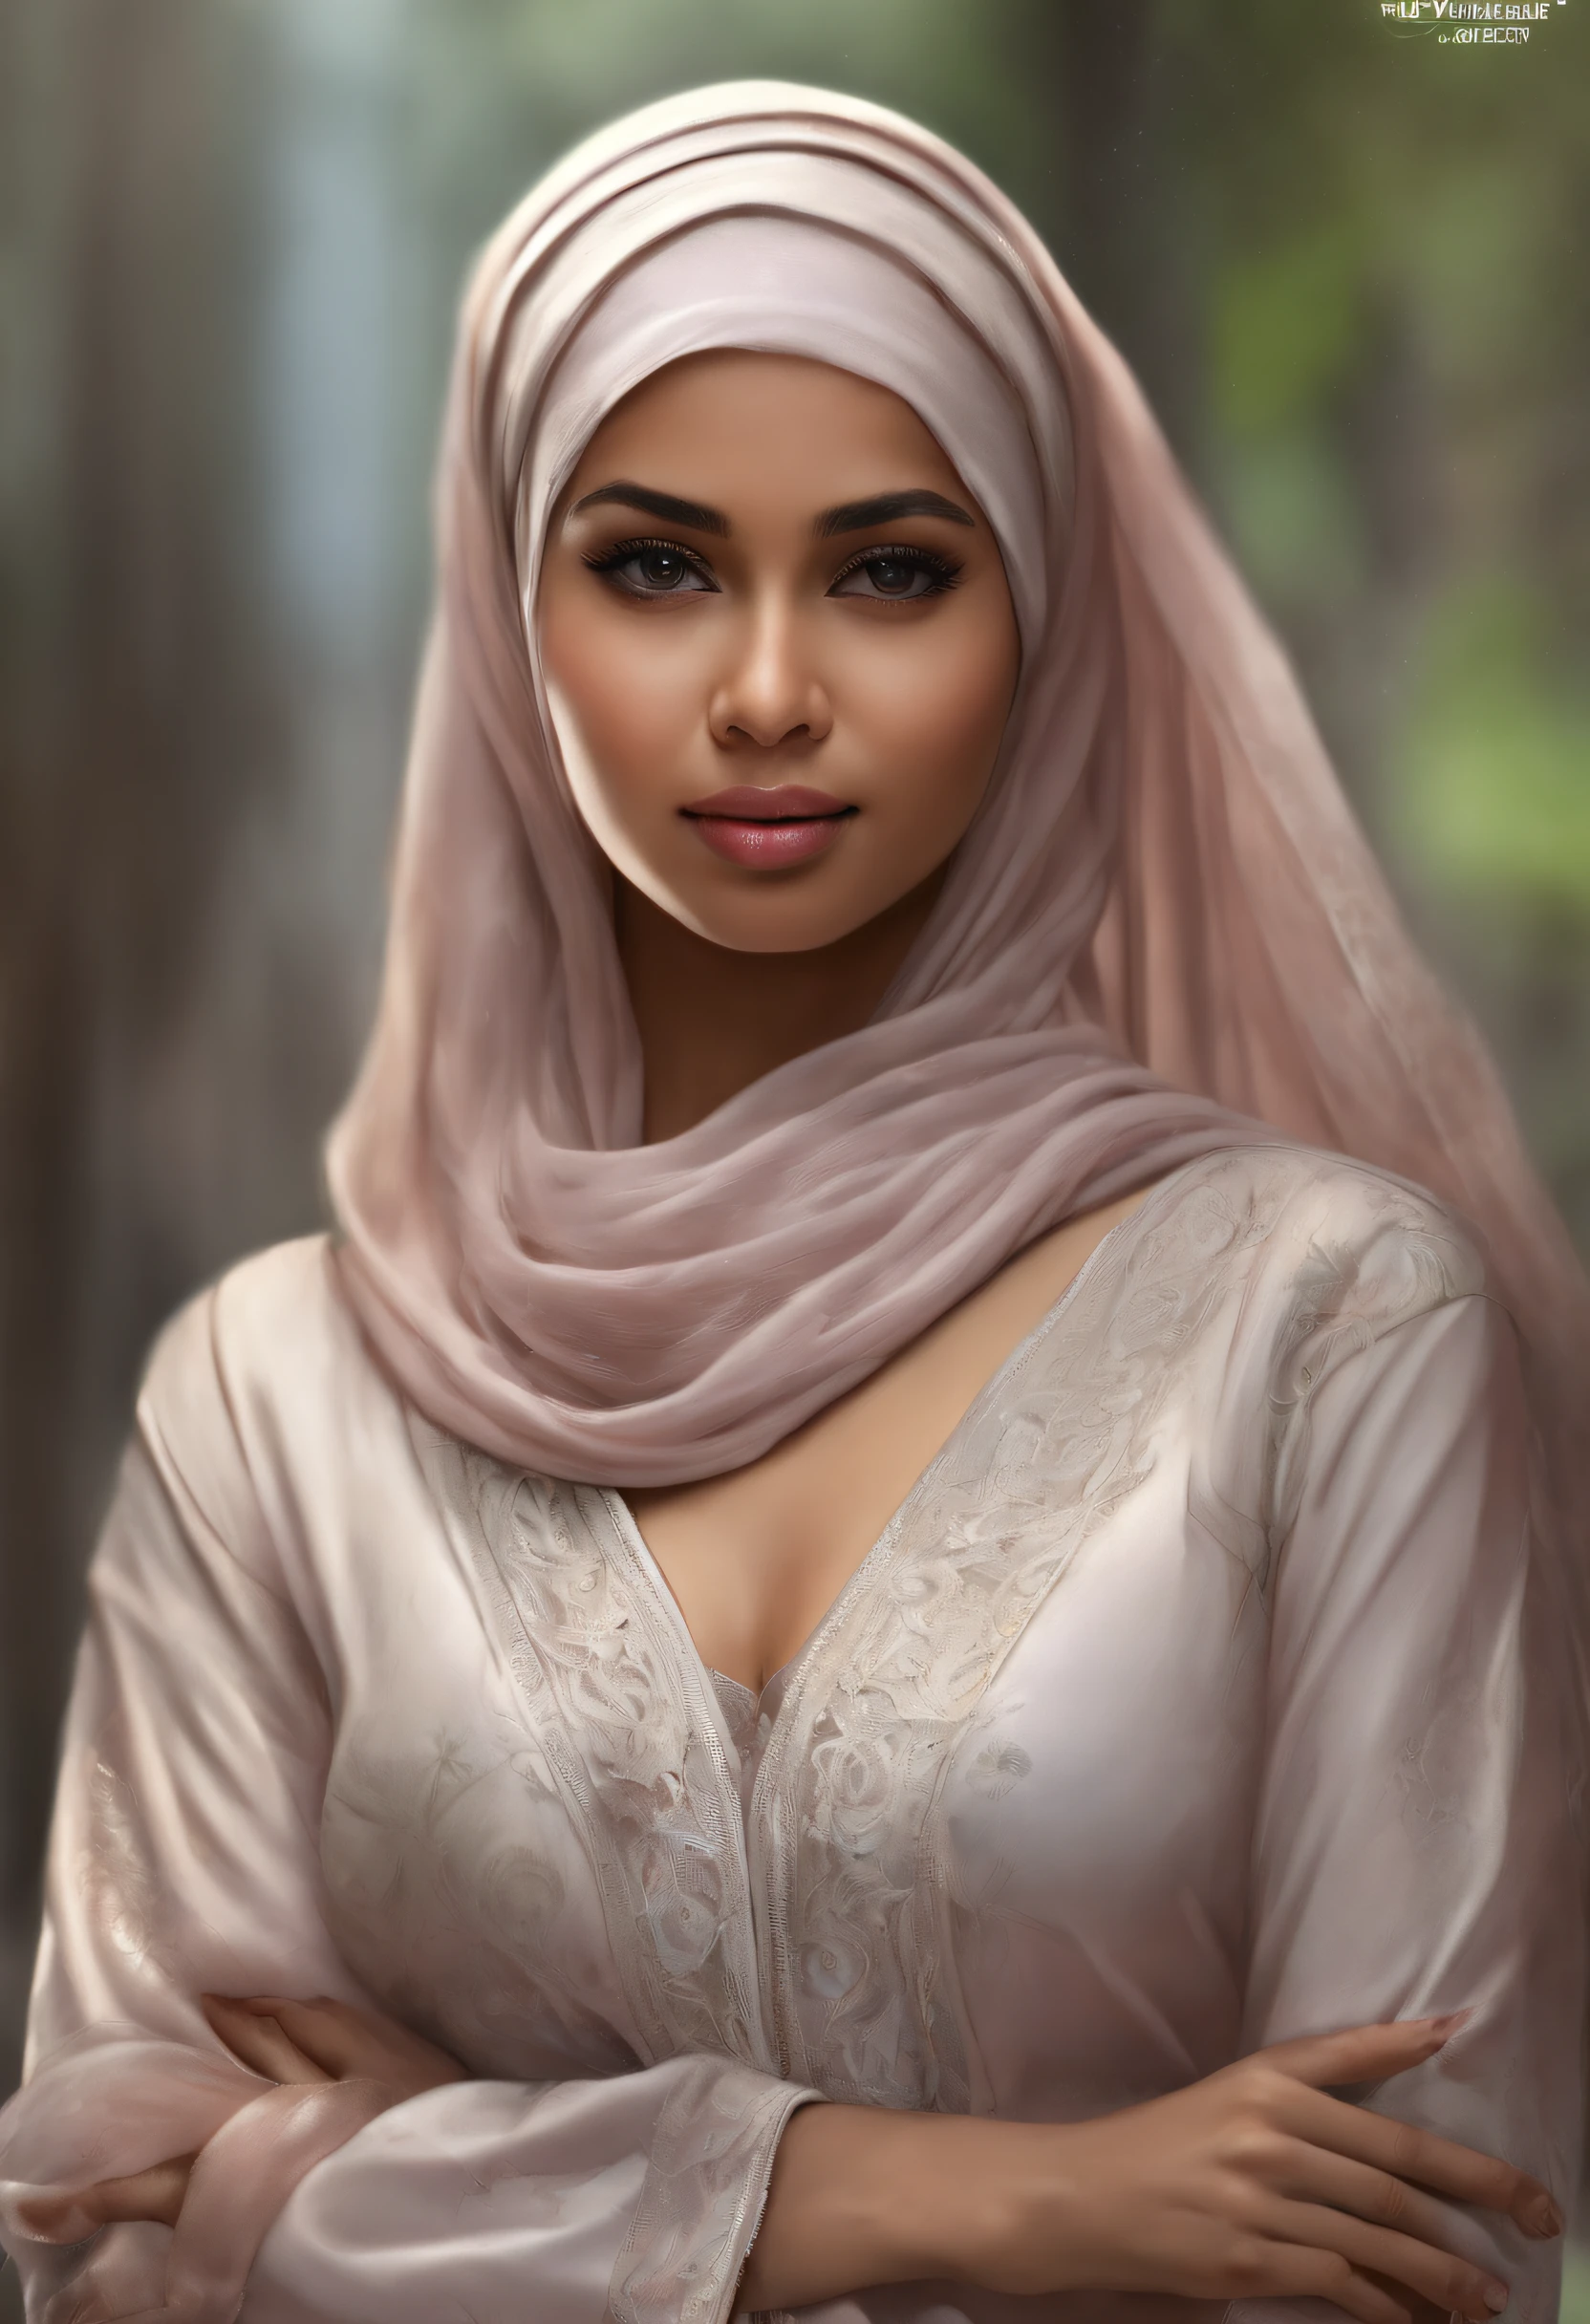 hijab, naked malay girl, showing , high quality UHD wallpaper